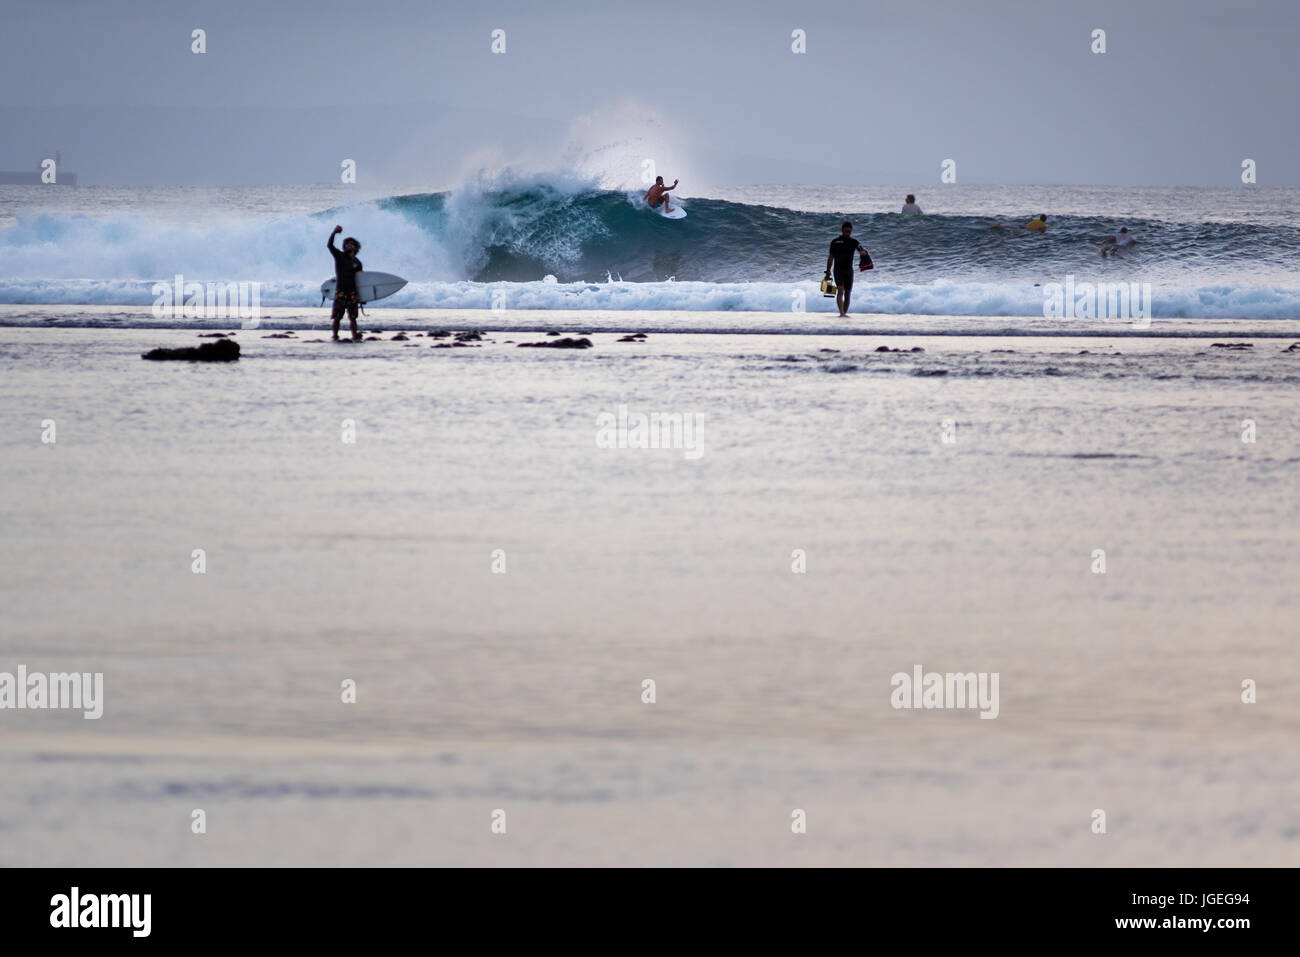 7 giugno 2017; punto nel deserto, lombok, Indonesia.; i surfisti di tutto il mondo godetevi il rigonfiamento estreme del tubo onde in questa remota world class surf s Foto Stock